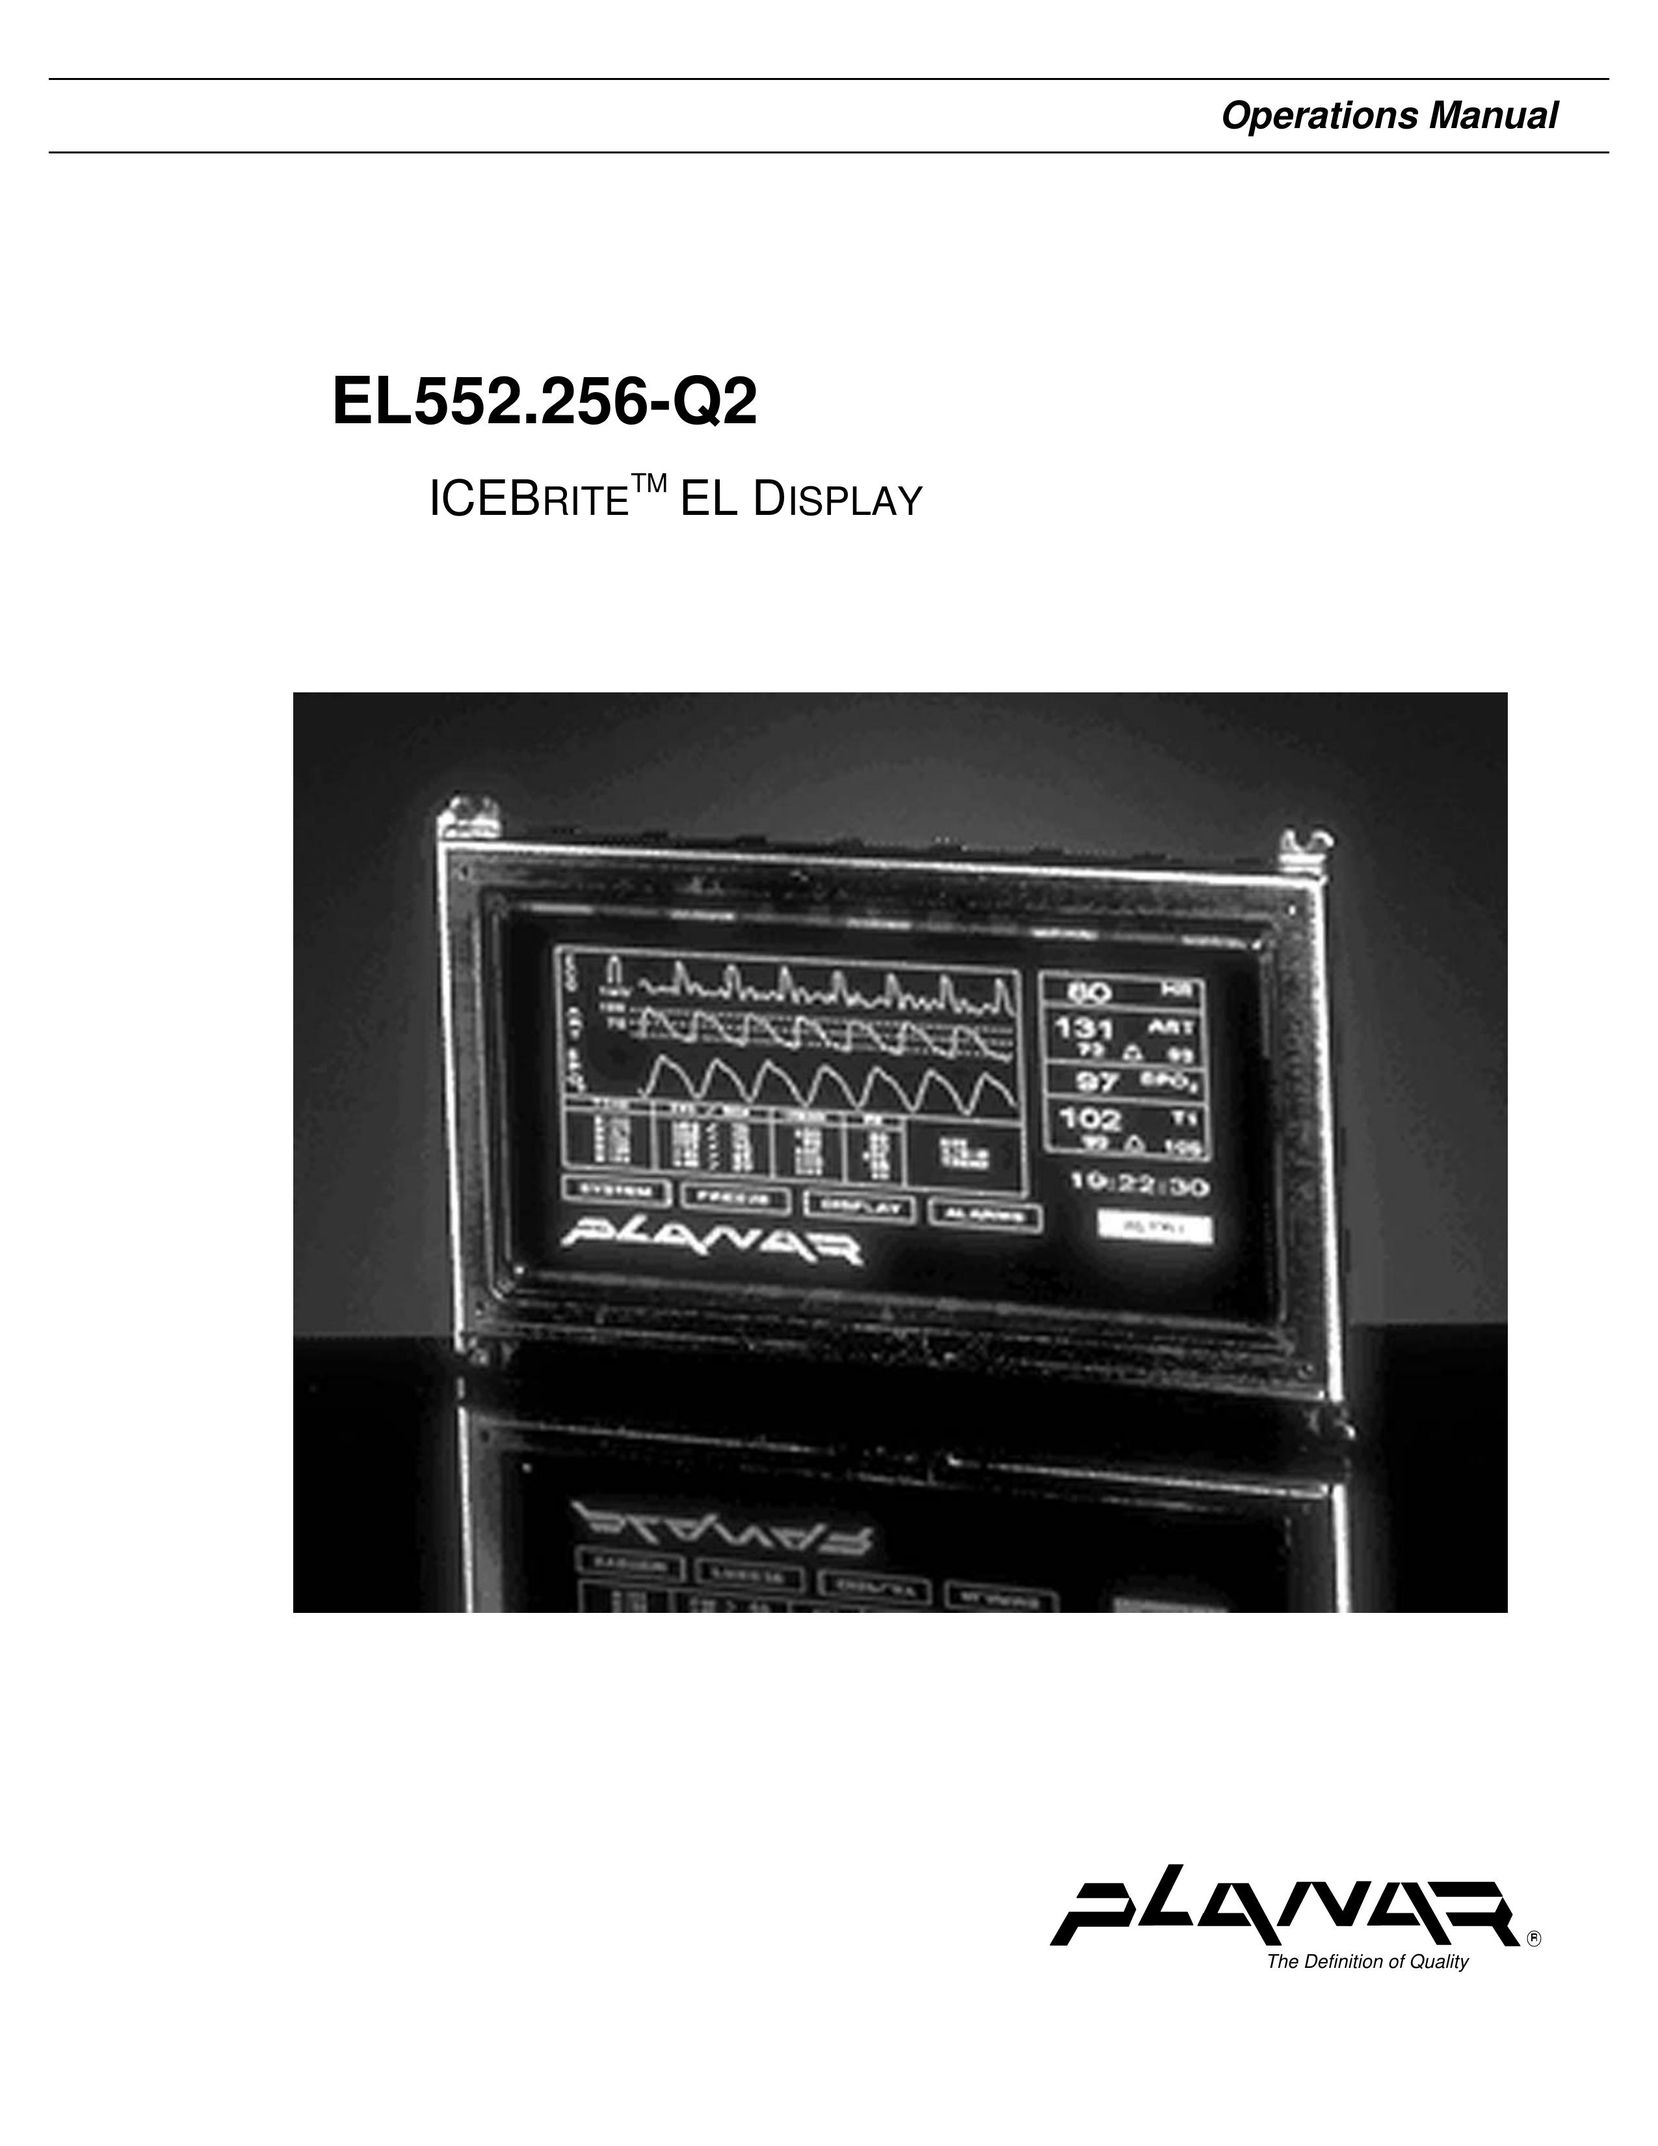 Planar EL552.256-Q2 Home Theater Screen User Manual